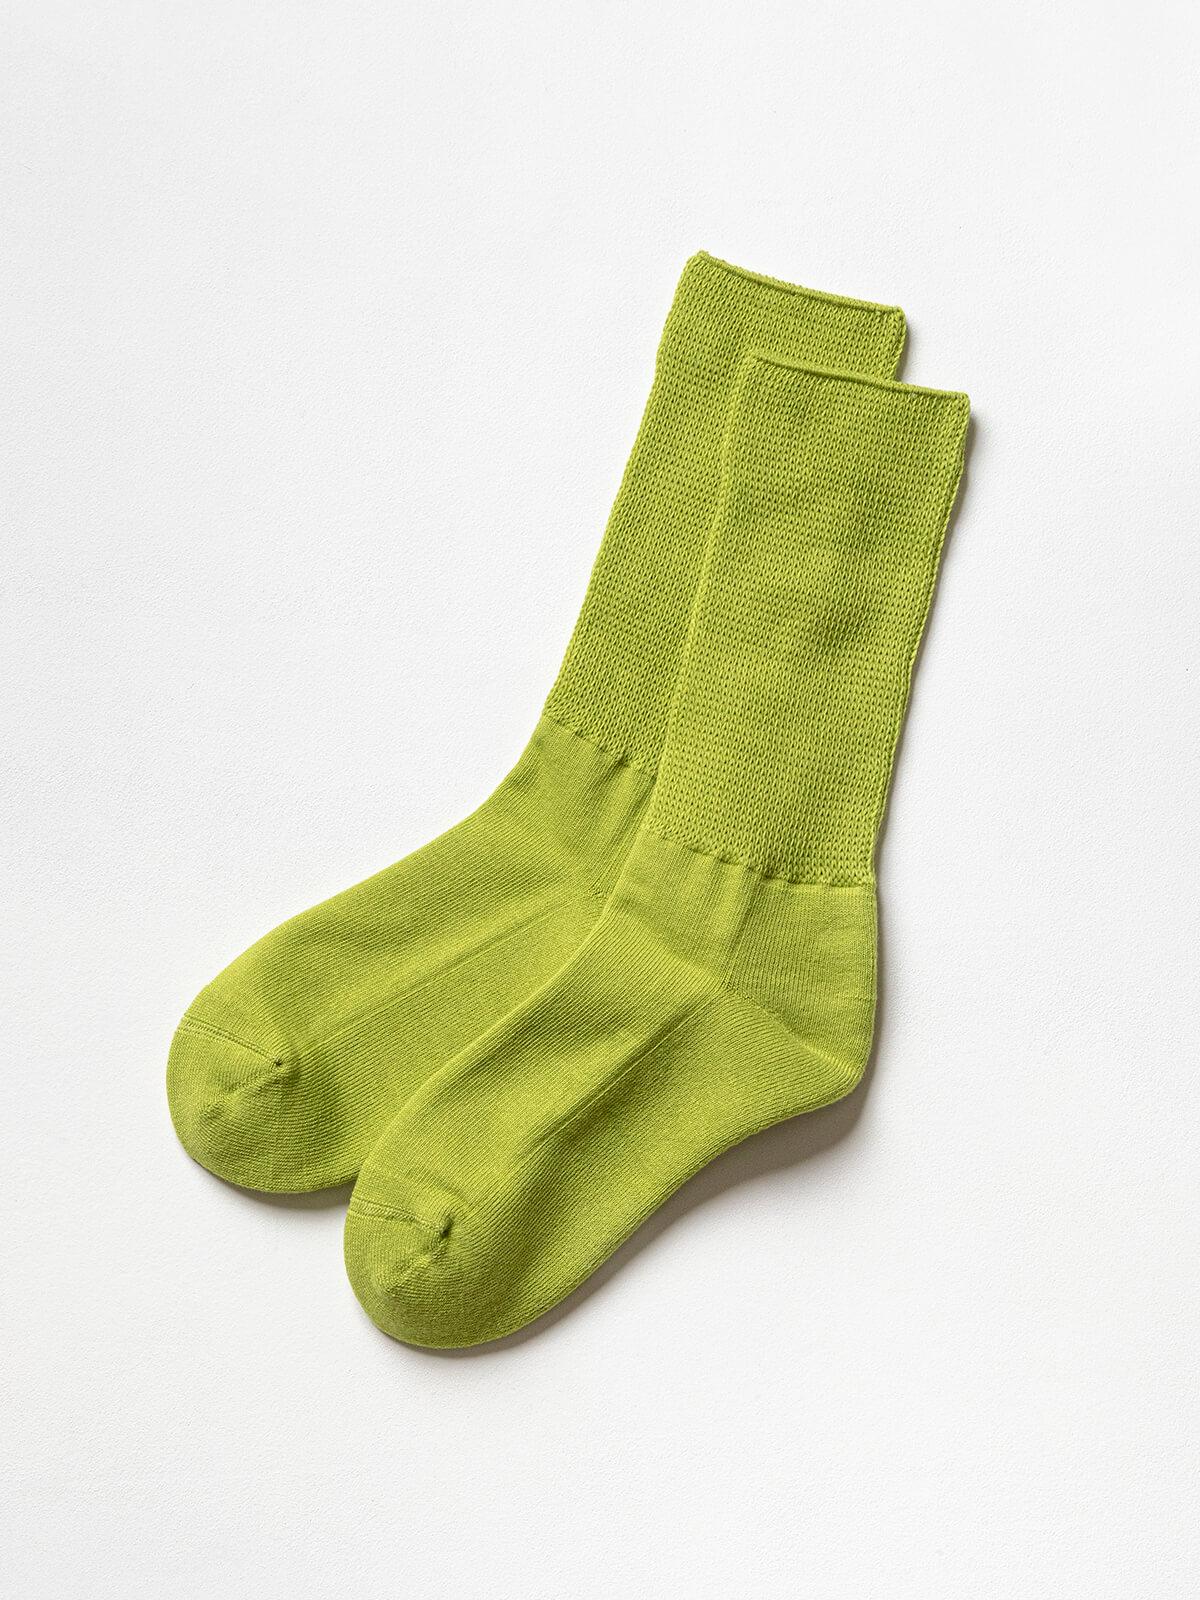 当たりつきギフト専用靴下のLUCKY SOCKS（ラッキーソックス）のRelax Pile Socks（リラックスパイルソックス）のグリーンアップル